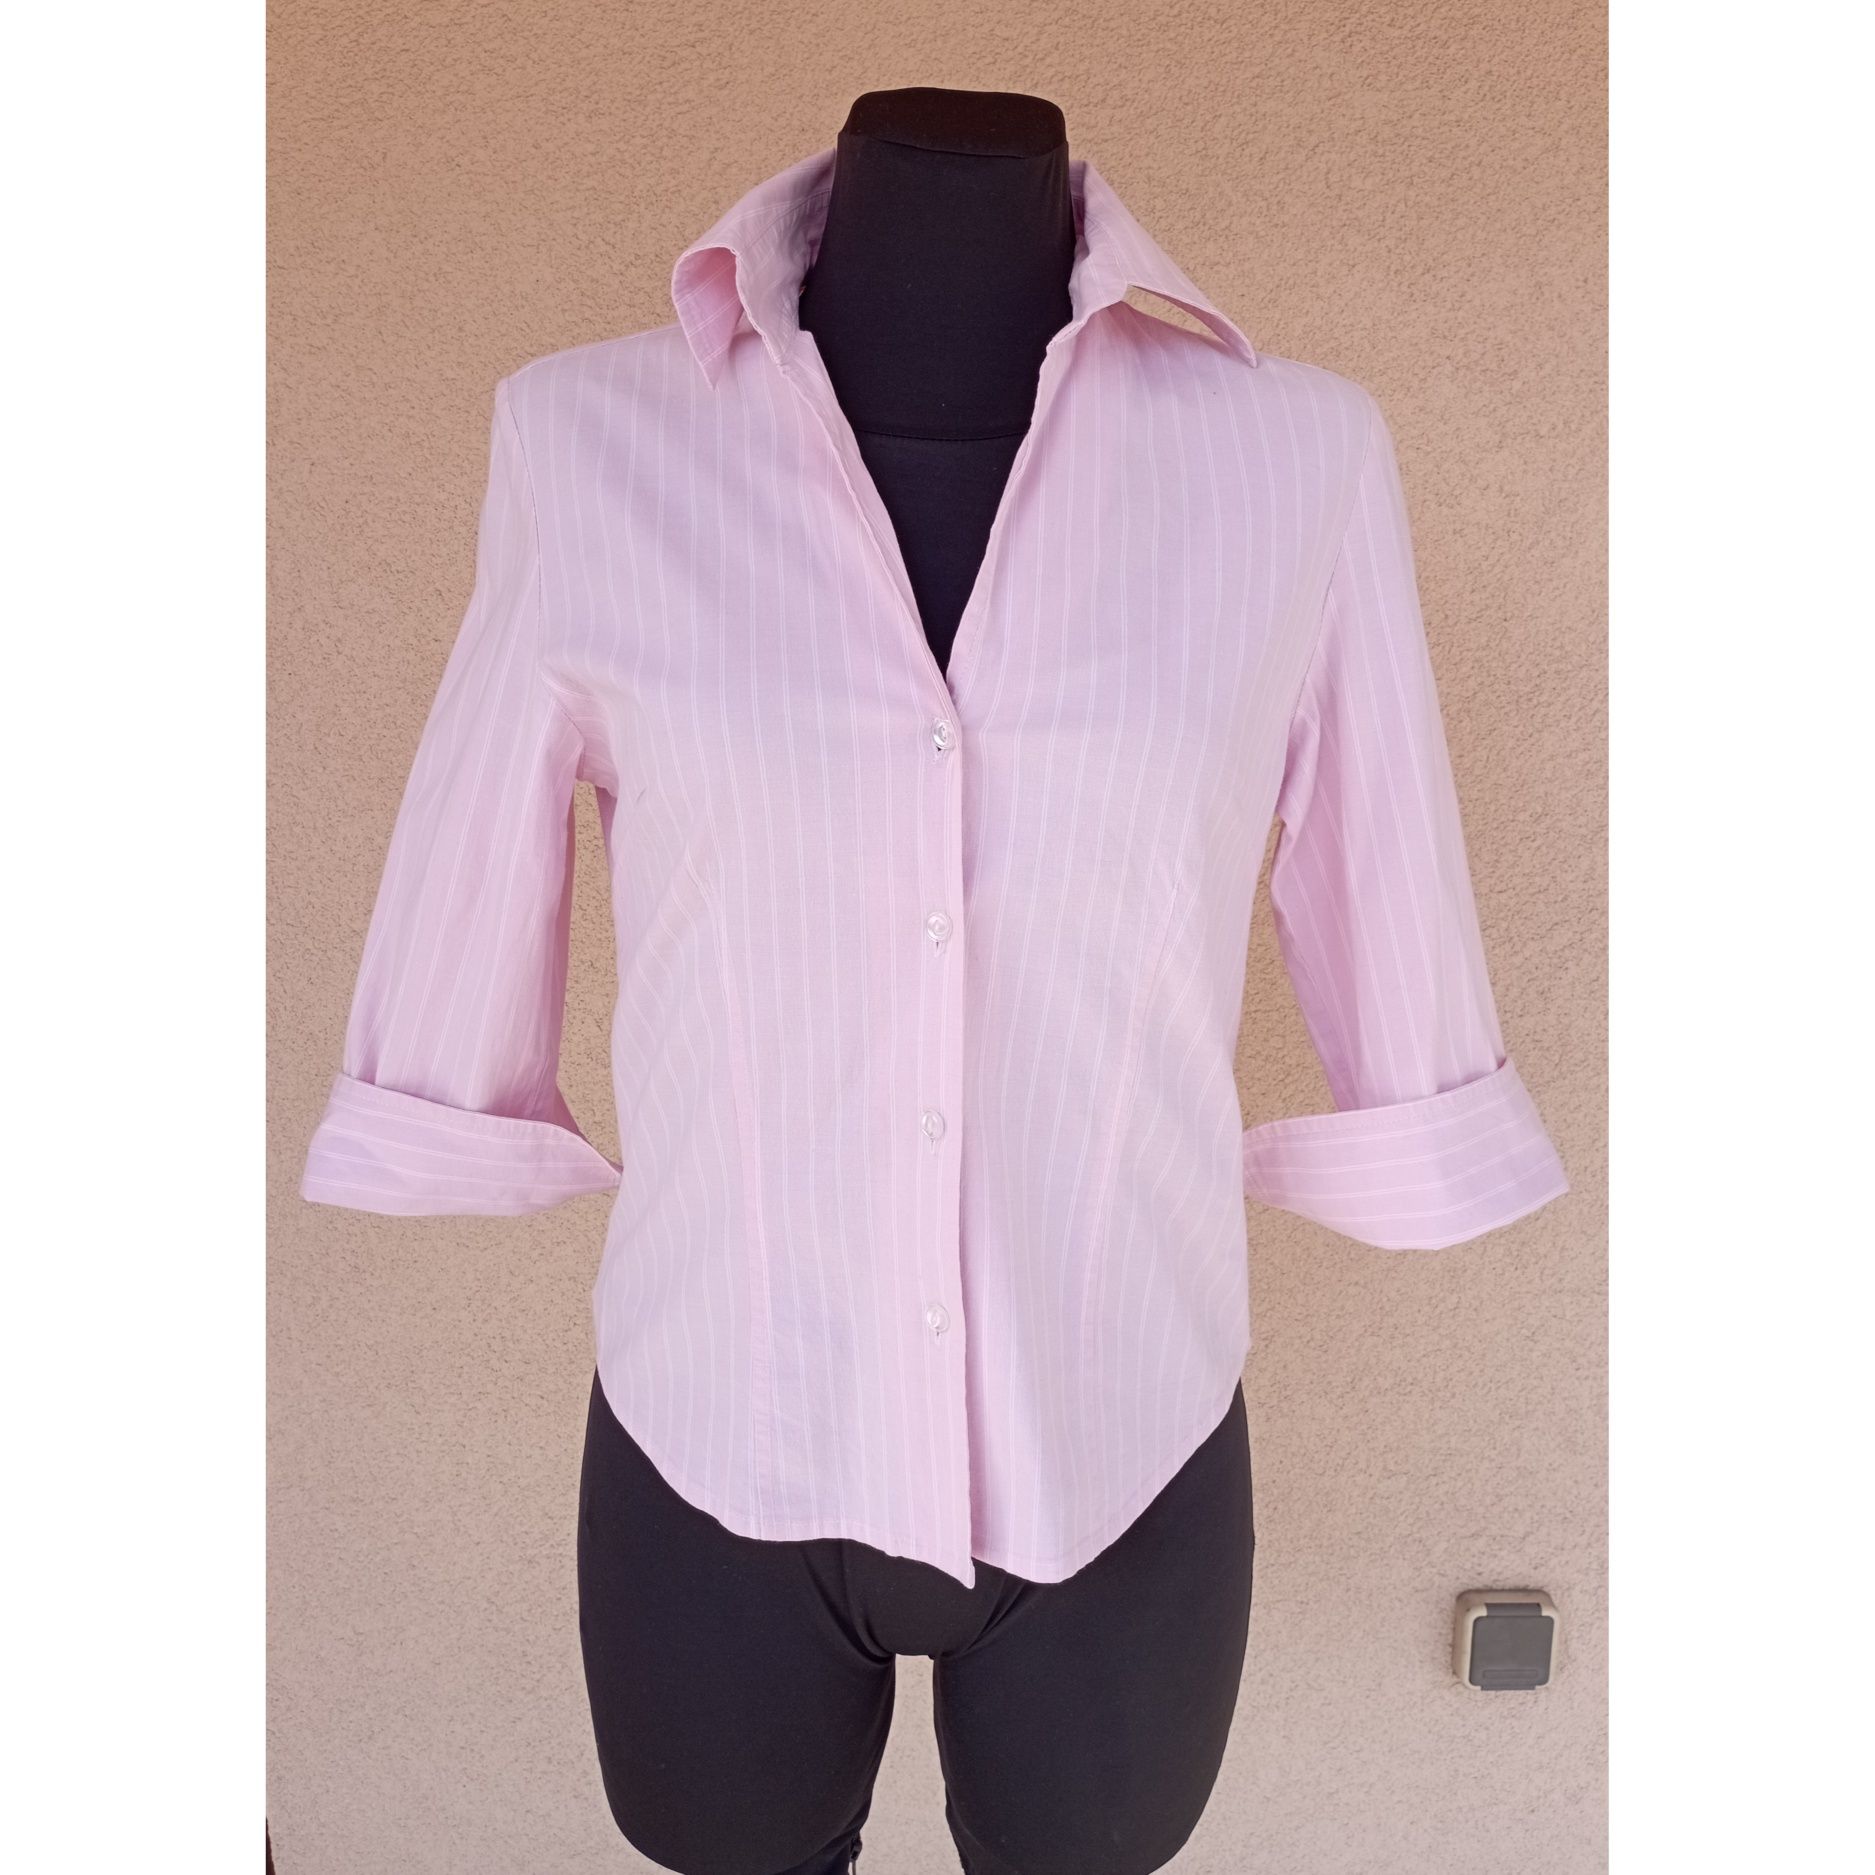 Koszula vintage M/L paski różowo biała